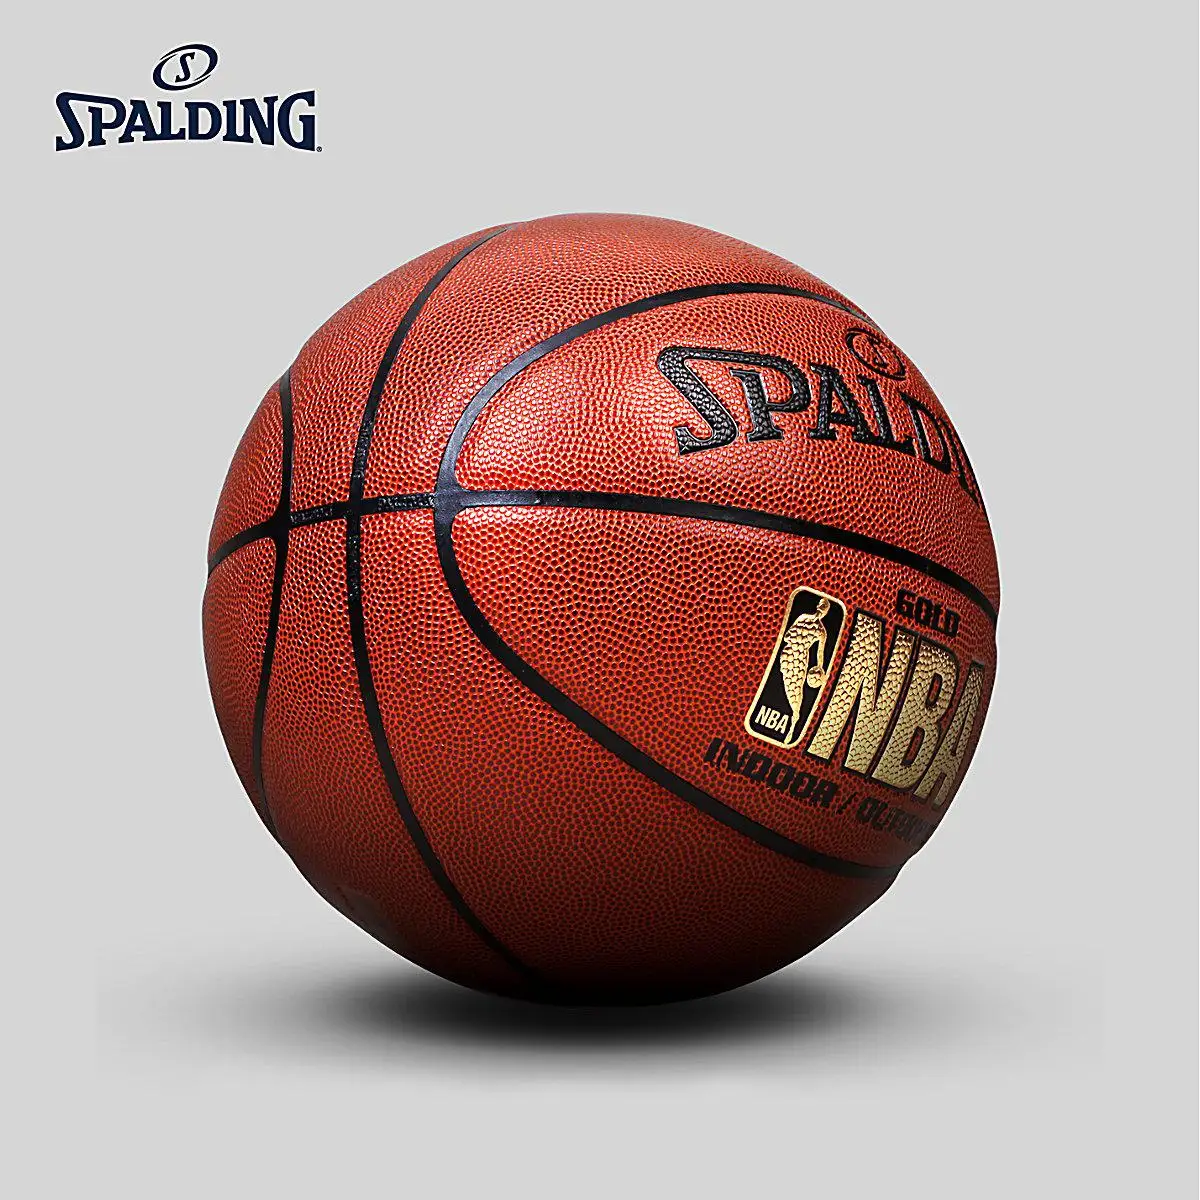 Spalding Nba, Золотой логотип, для помещений и улицы, баскетбольный мяч, Размер 7, Pumaterial, обучающий, мужской мяч для матча, 74-606y